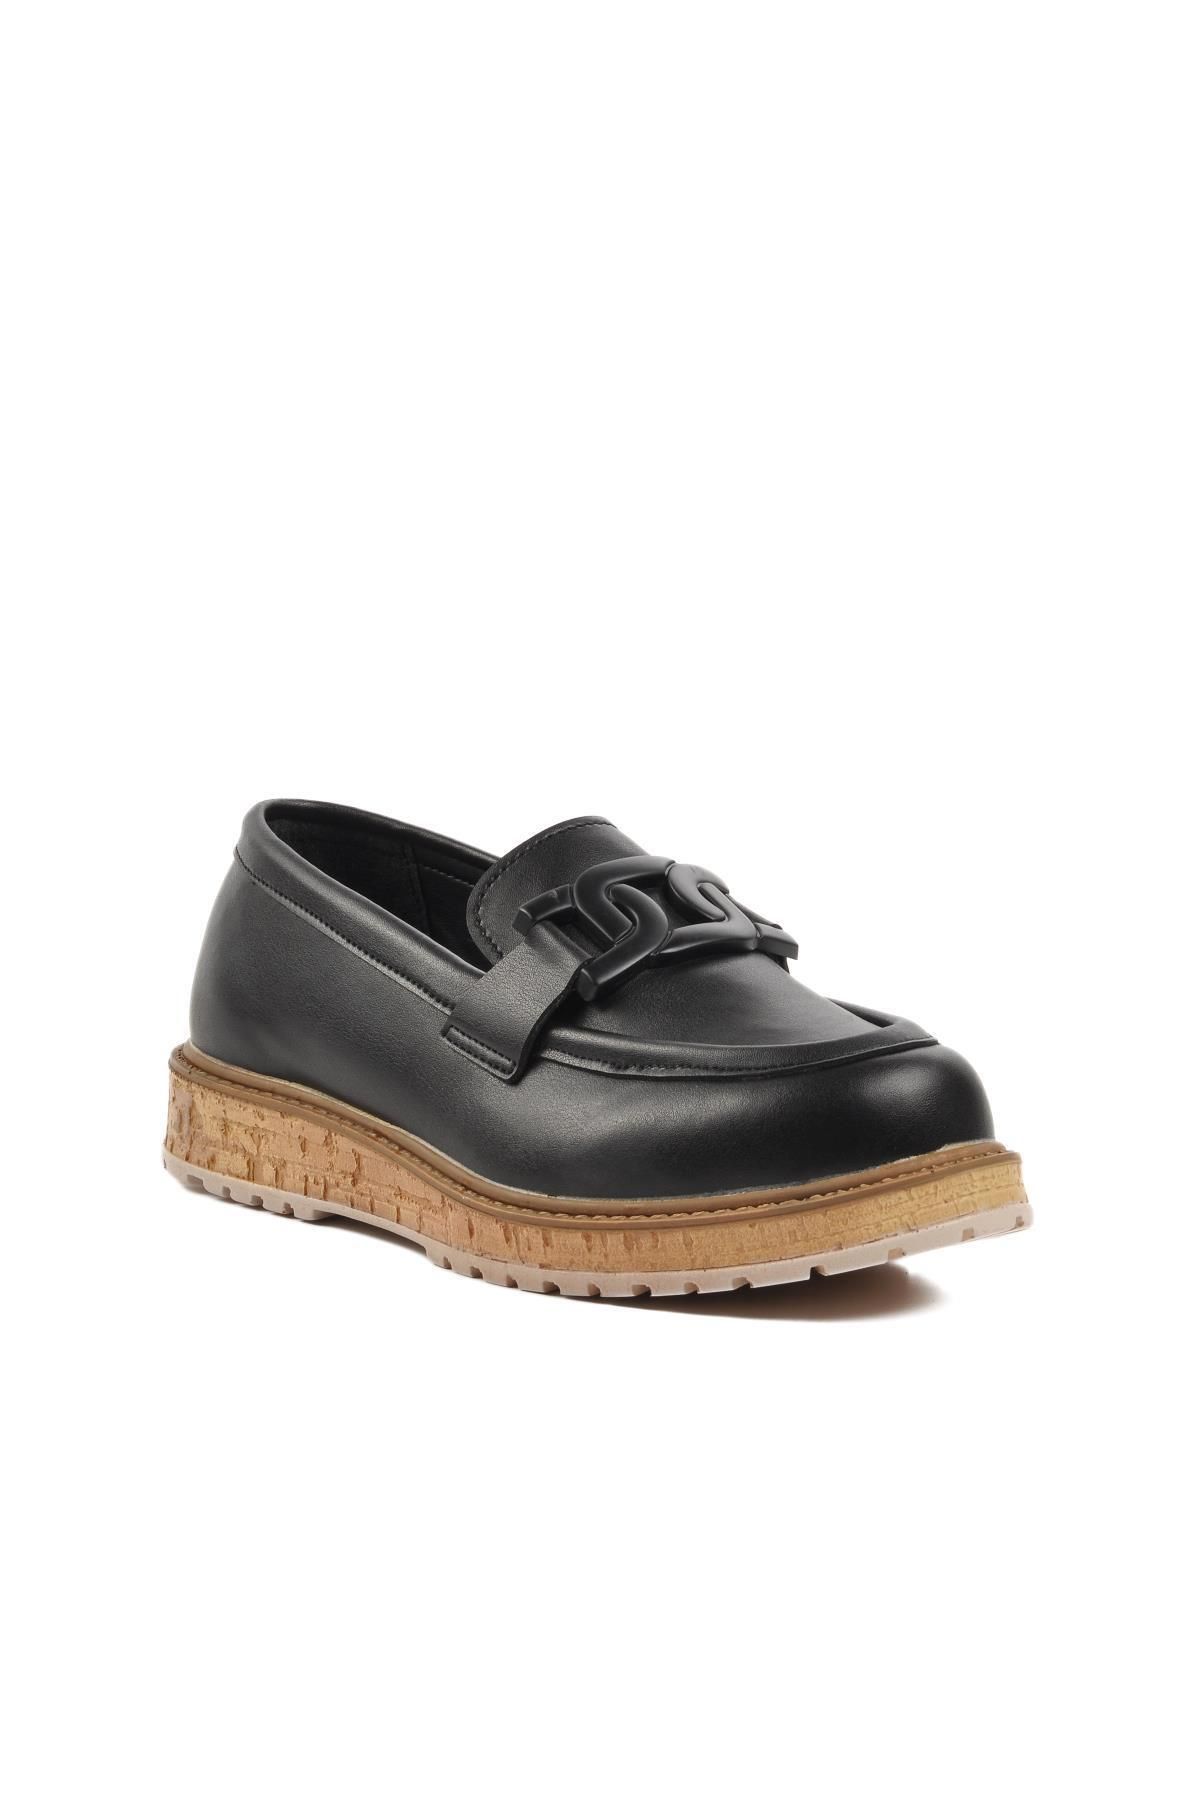 WALKWAY Dkc2301 Siyah Kadın Loafer Ayakkabı